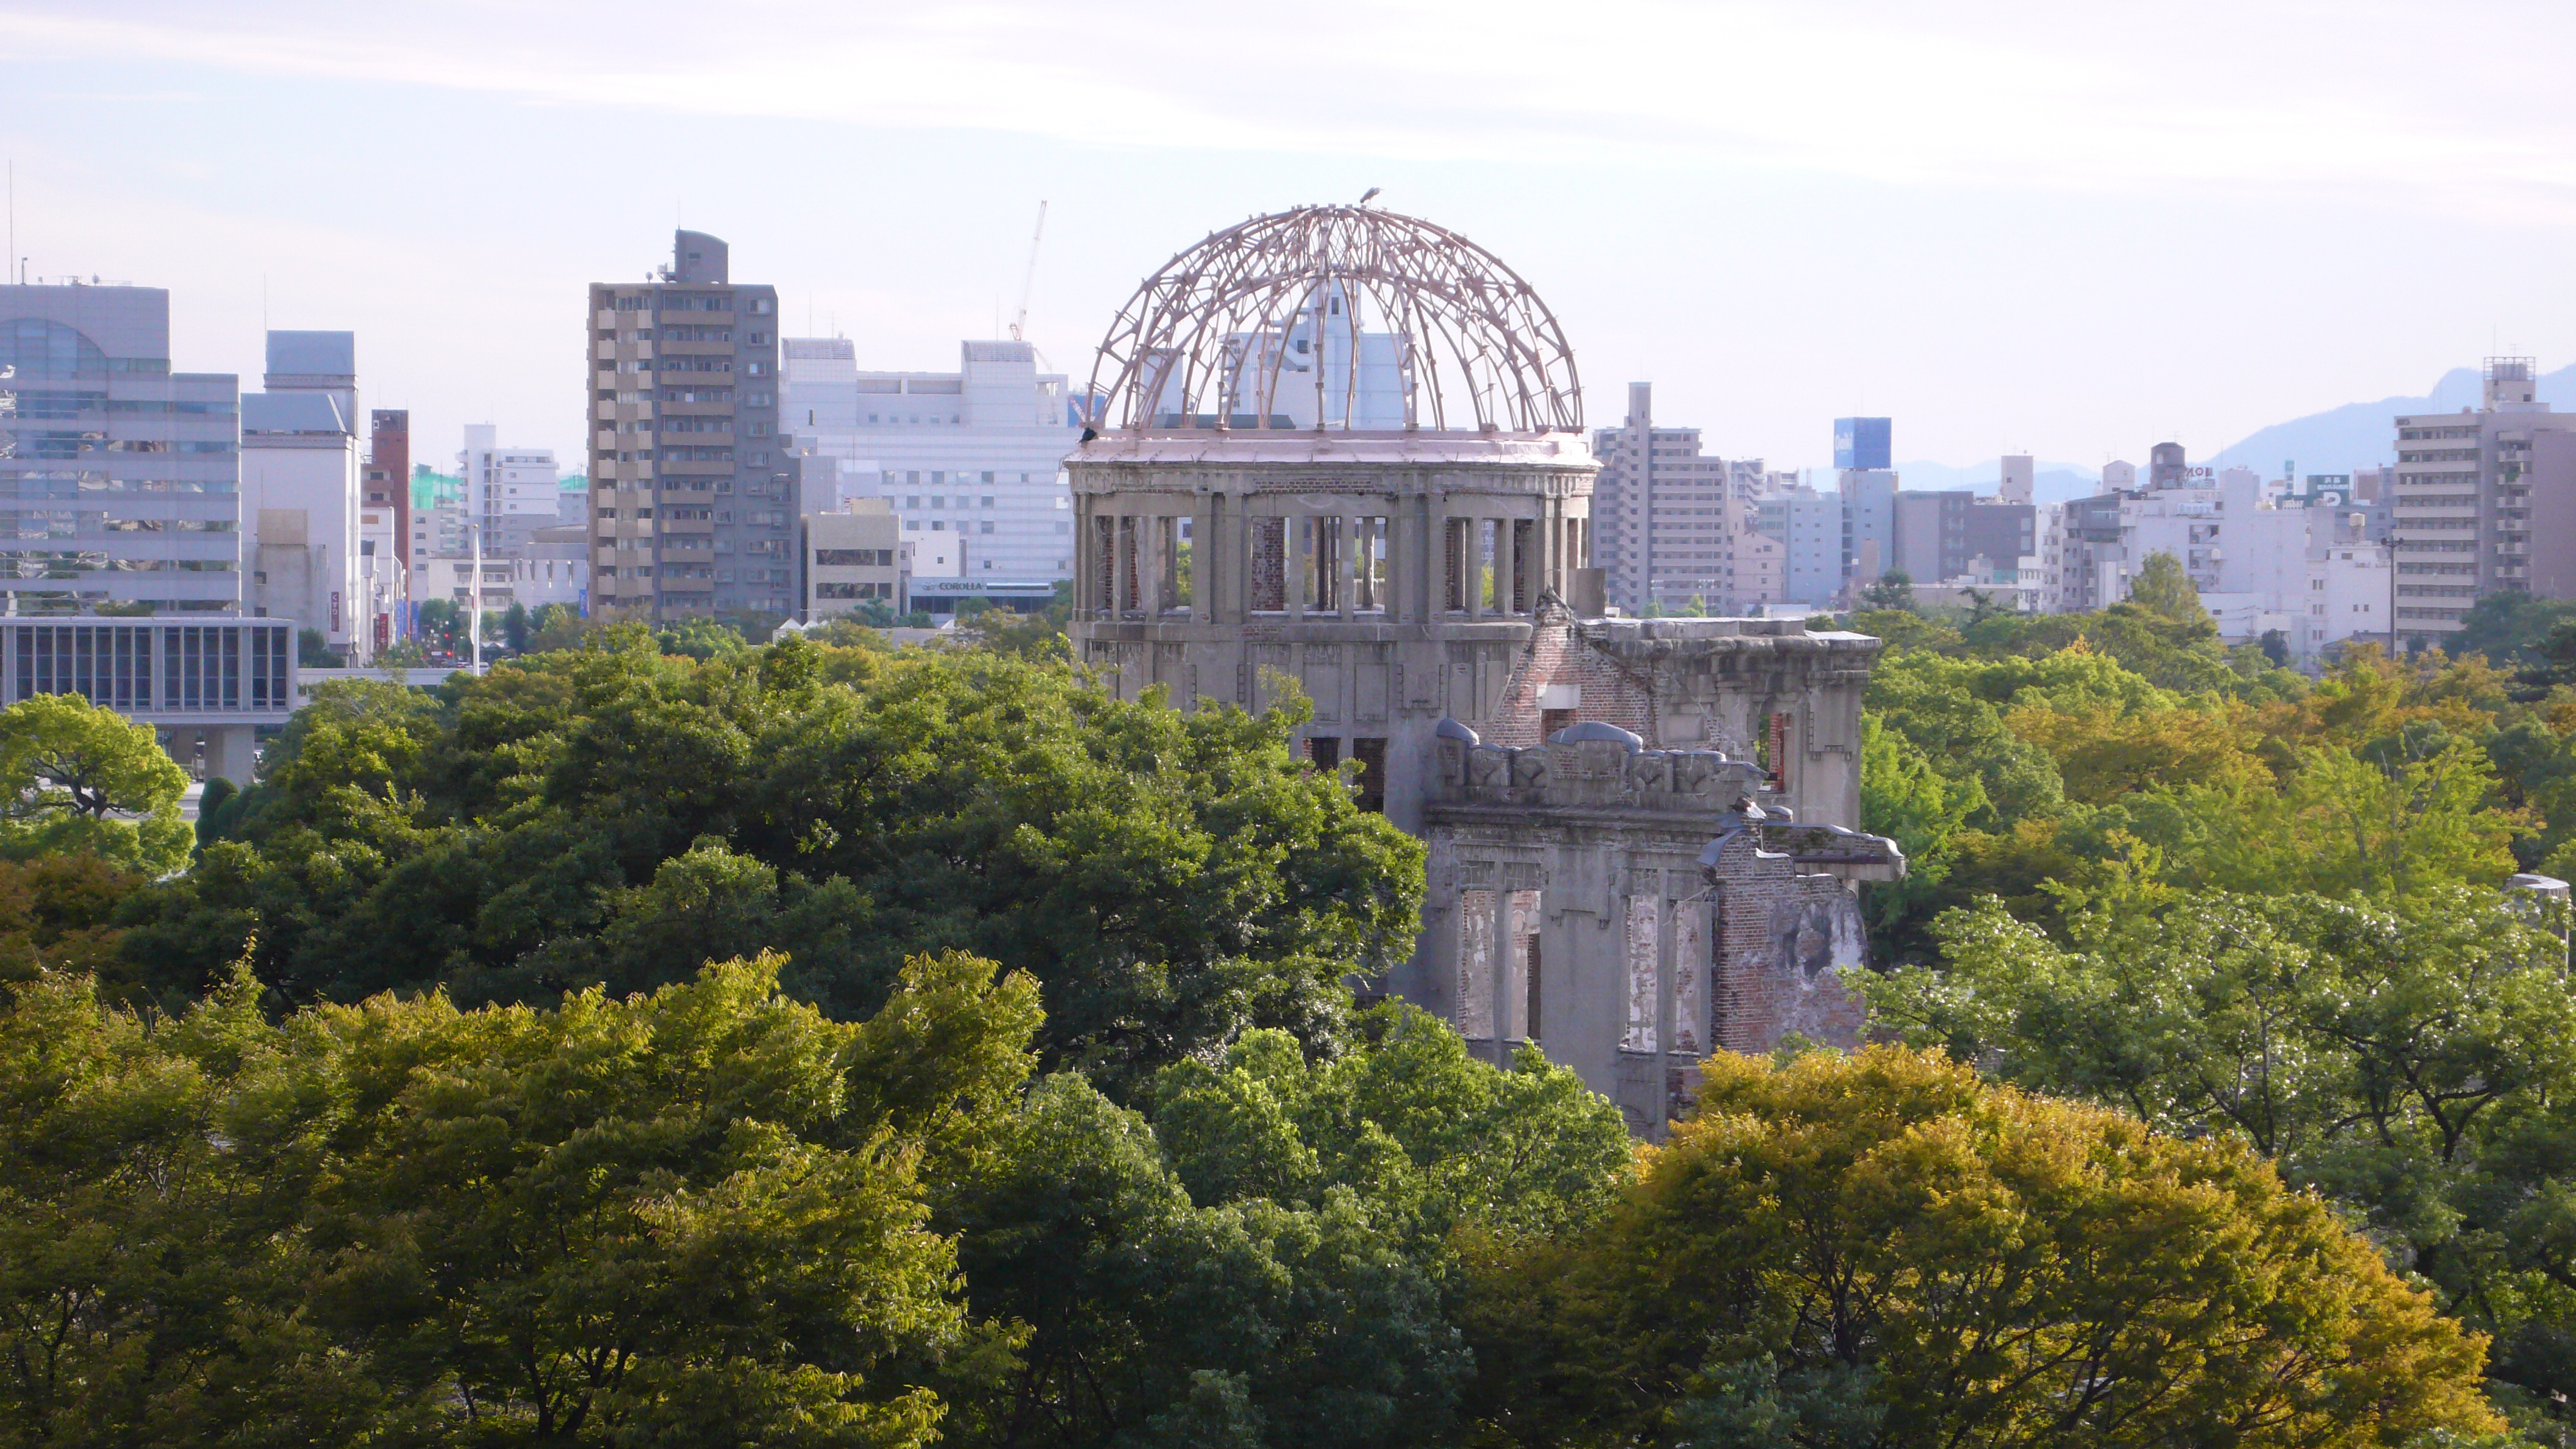 ランキング 外国人に人気の日本観光地 1位は広島平和記念資料館 ートリップアドバイザー調査 トラベルボイス 観光産業ニュース